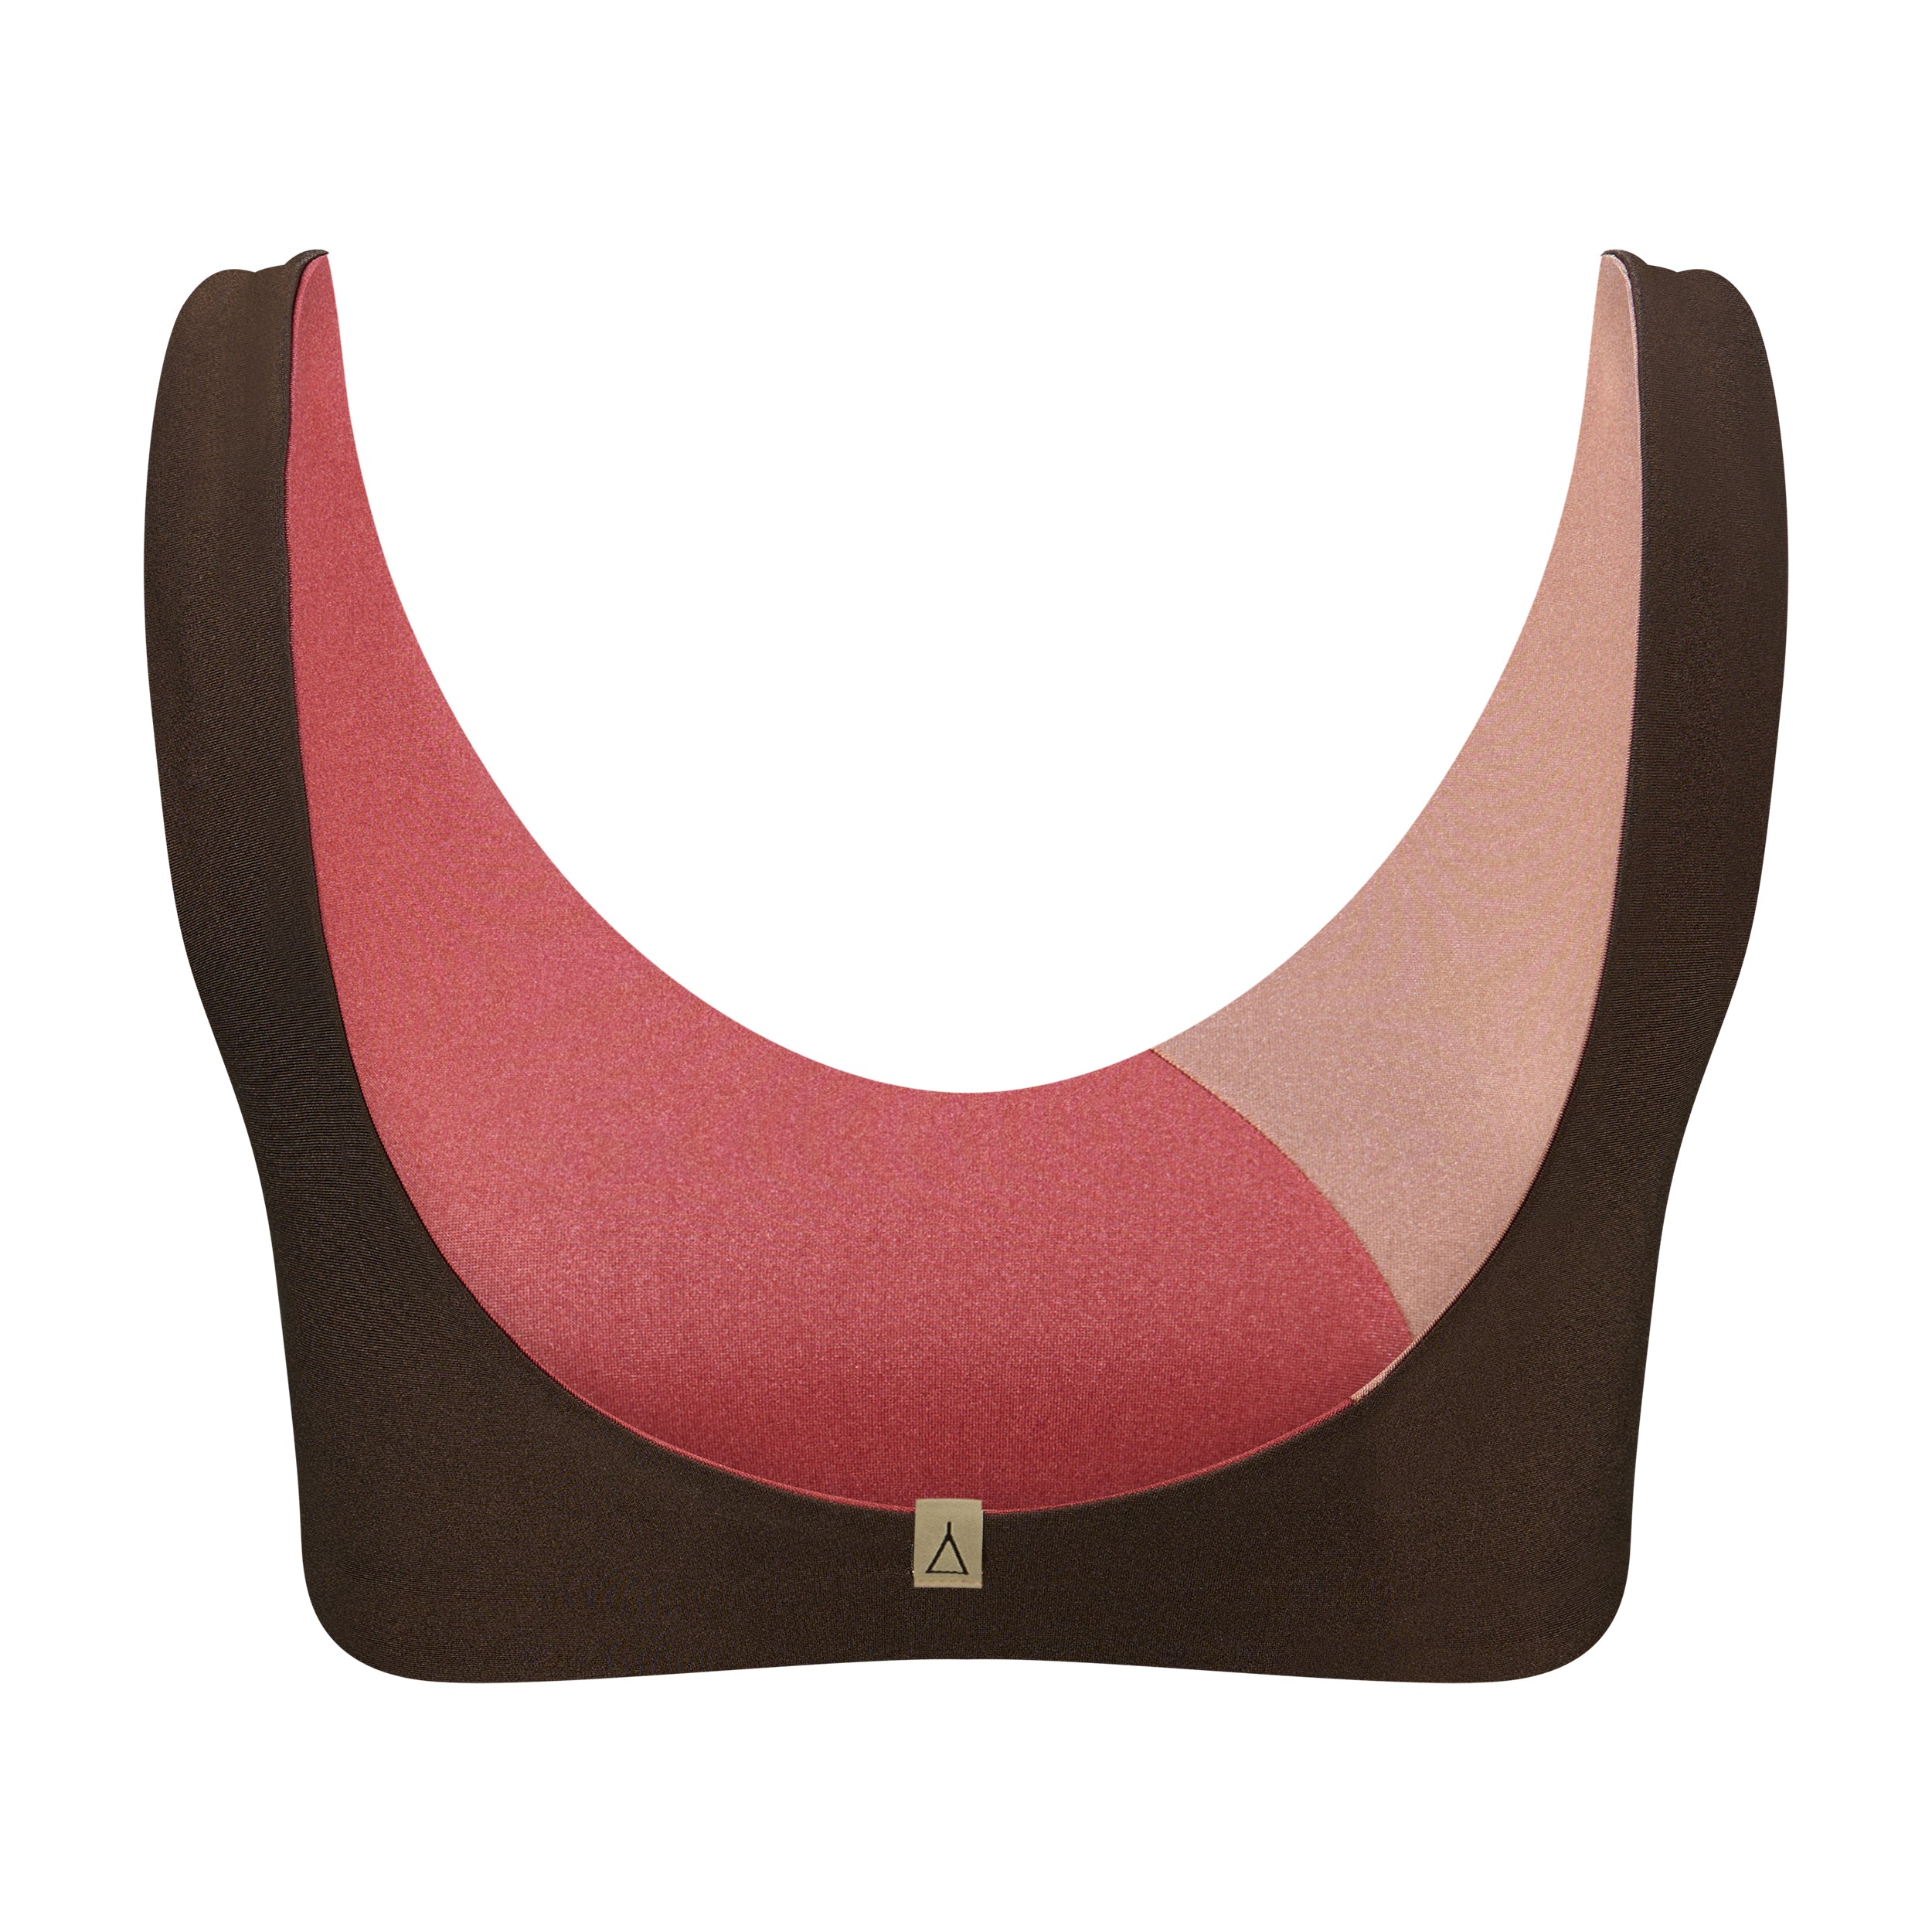 Bikini Oberteil mit Color Blocking von INASKA Limited Edition SHINE von hinten